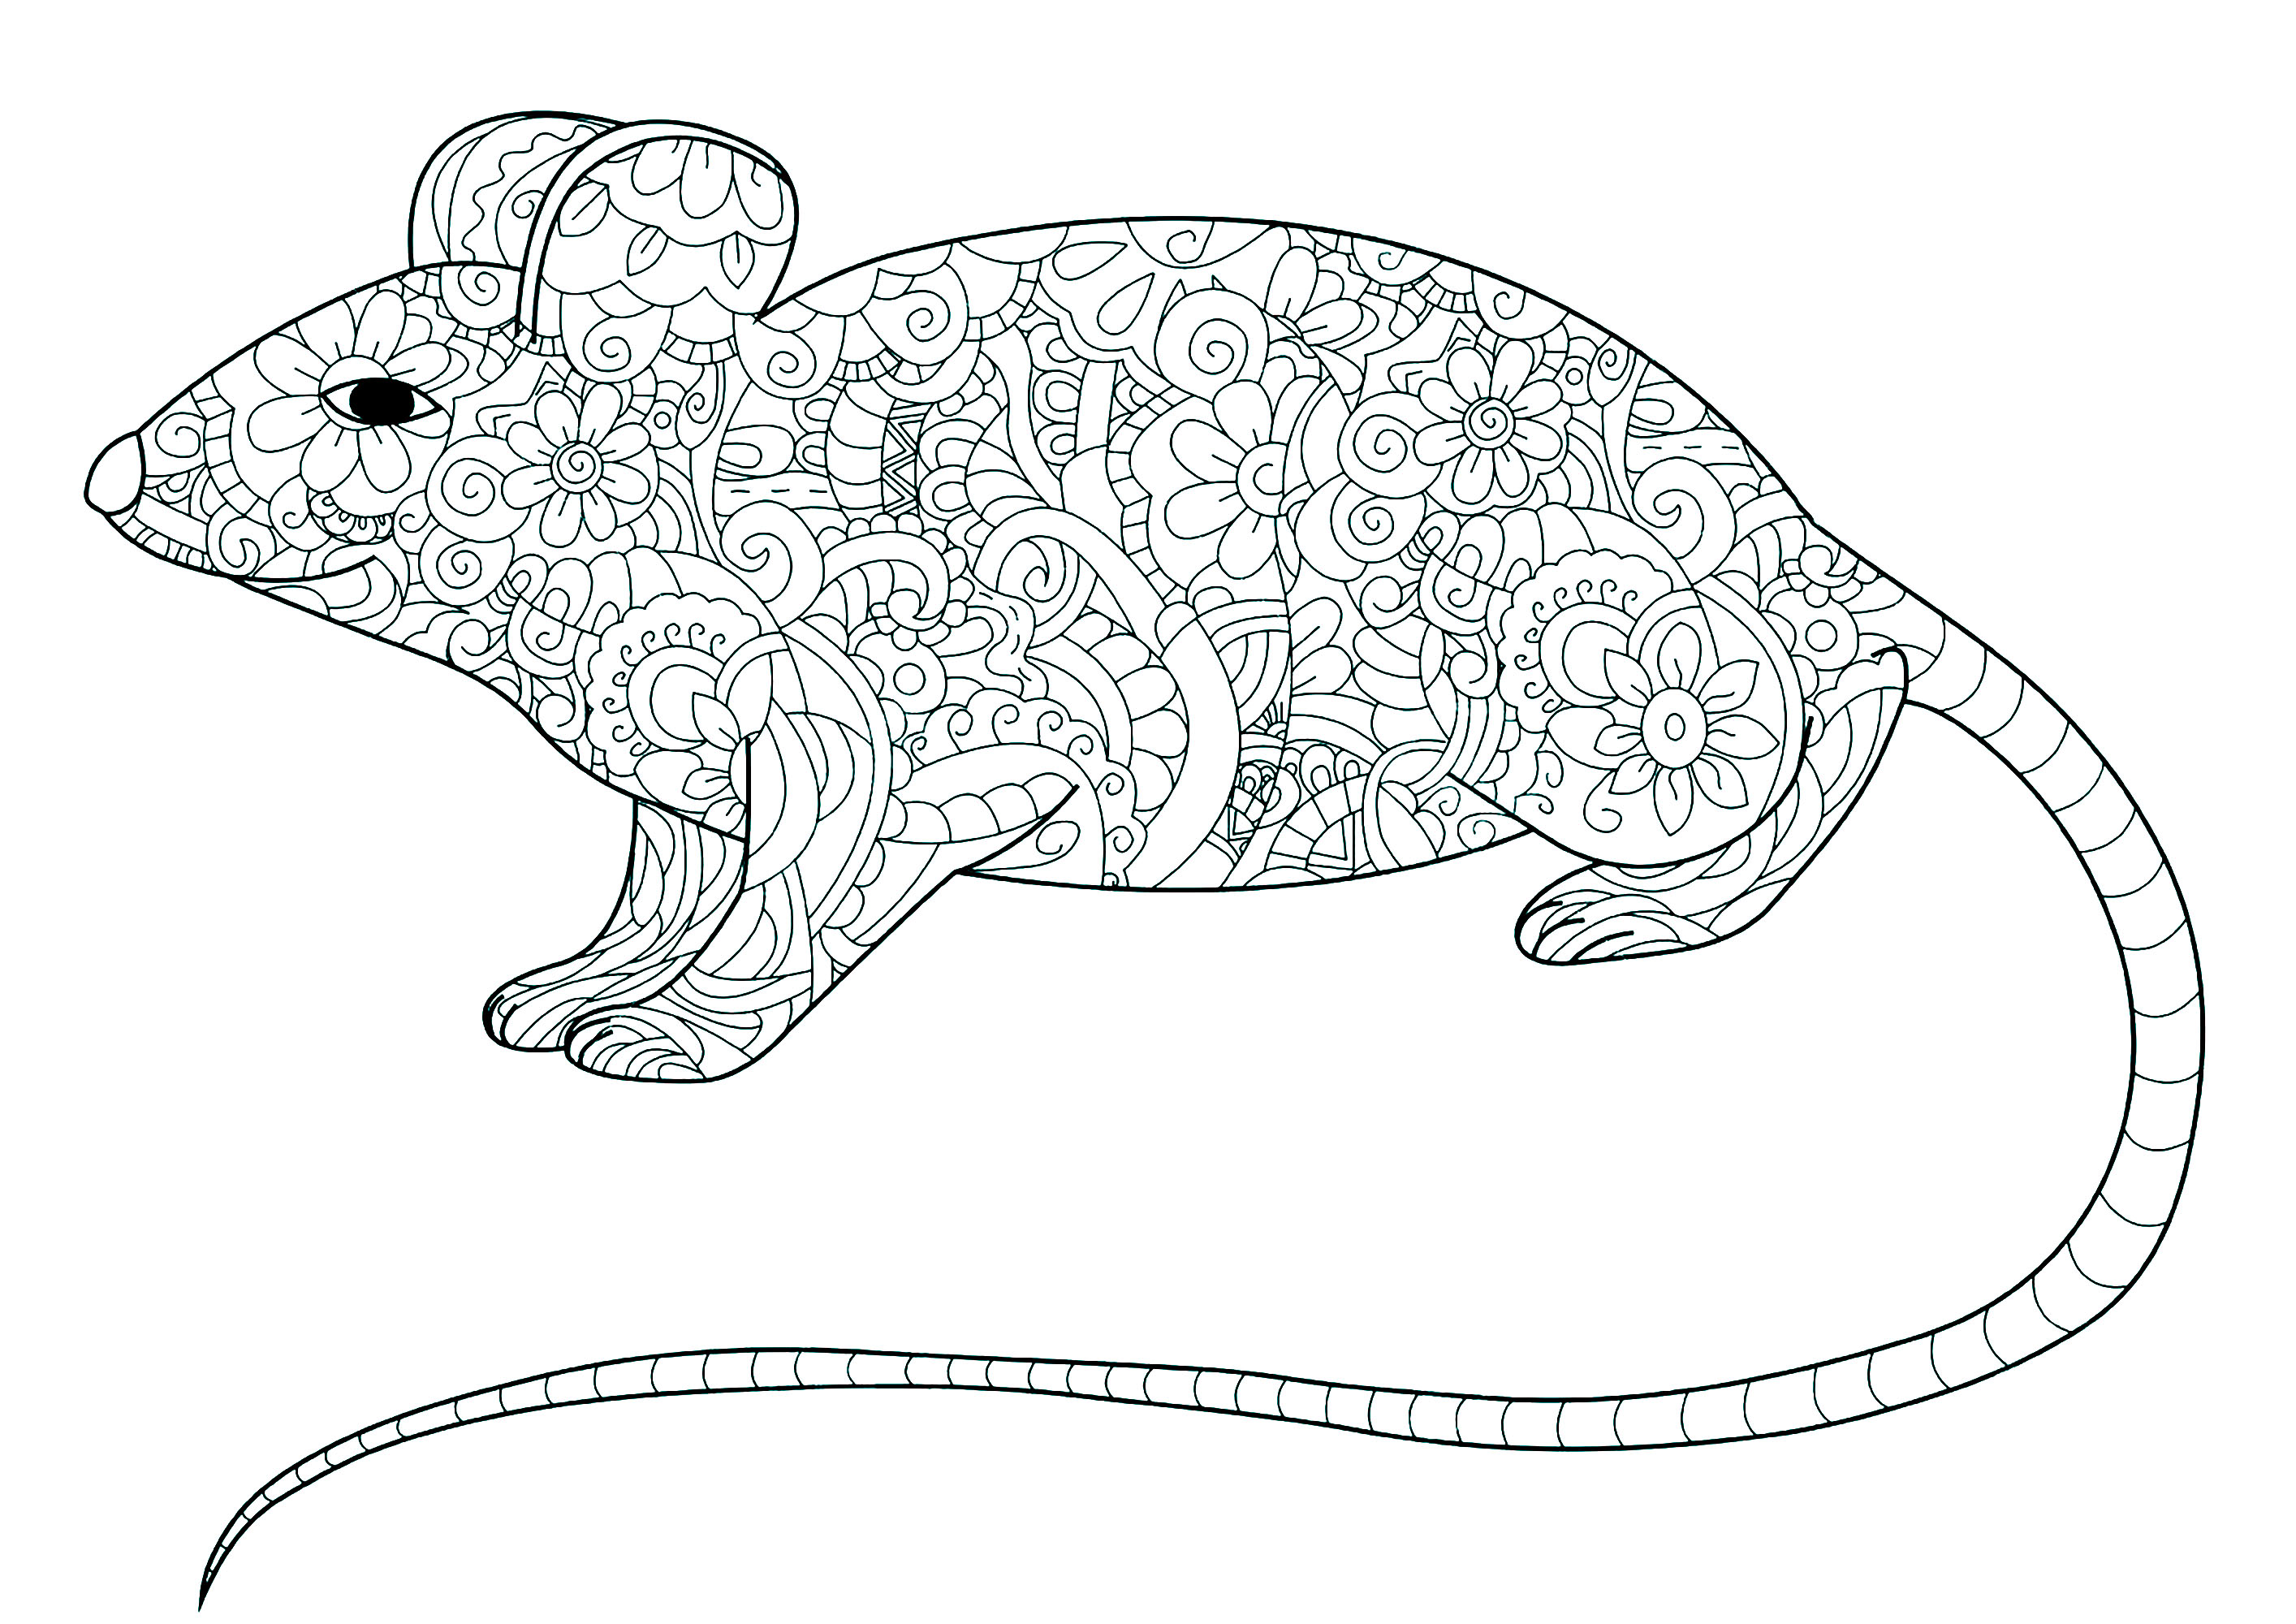 Página para colorir de um rato com cauda comprida e o corpo cheio de padrões florais